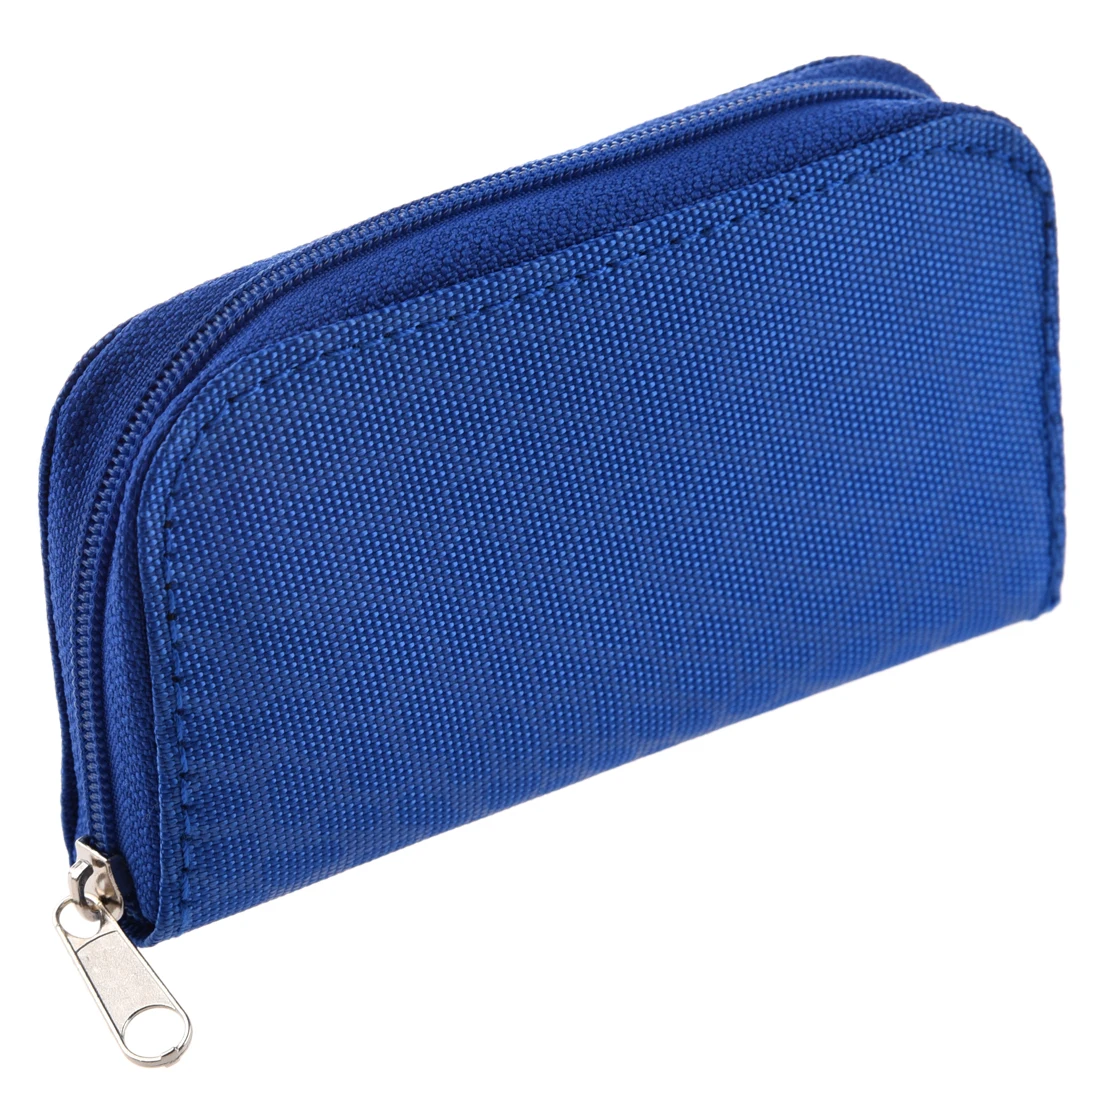 Горячая Распродажа чехол сумка для 22 мини-карты памяти SD XD синий